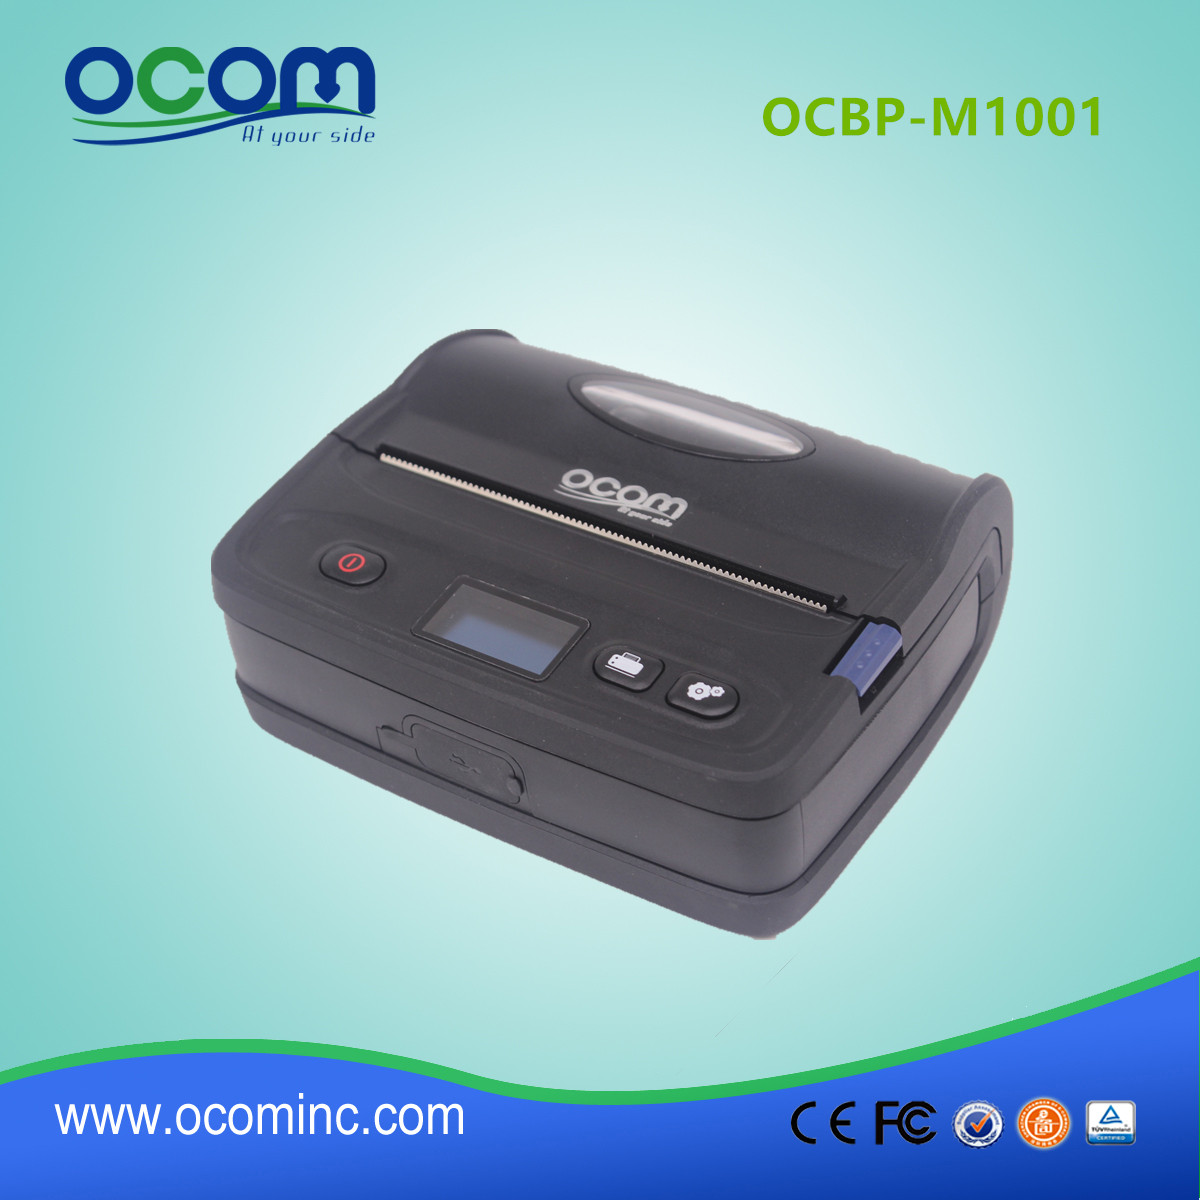 OCBP M1001 方便便携式蓝牙热标签打印机